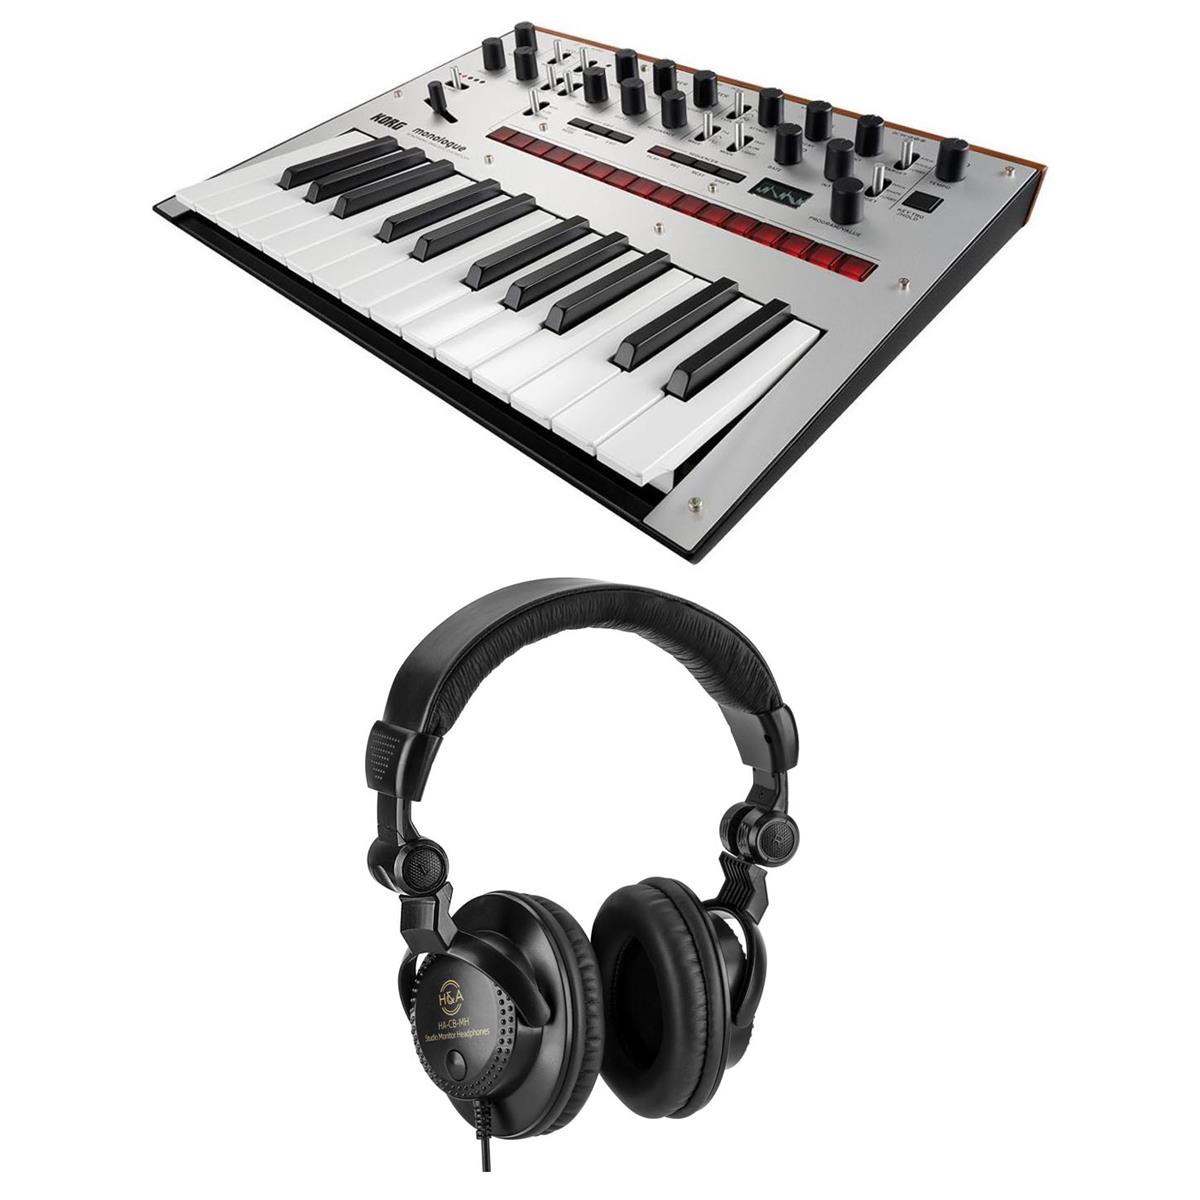 Image of Korg Monologue 25-Key Monophonic Analog Synthesizer with Headphones